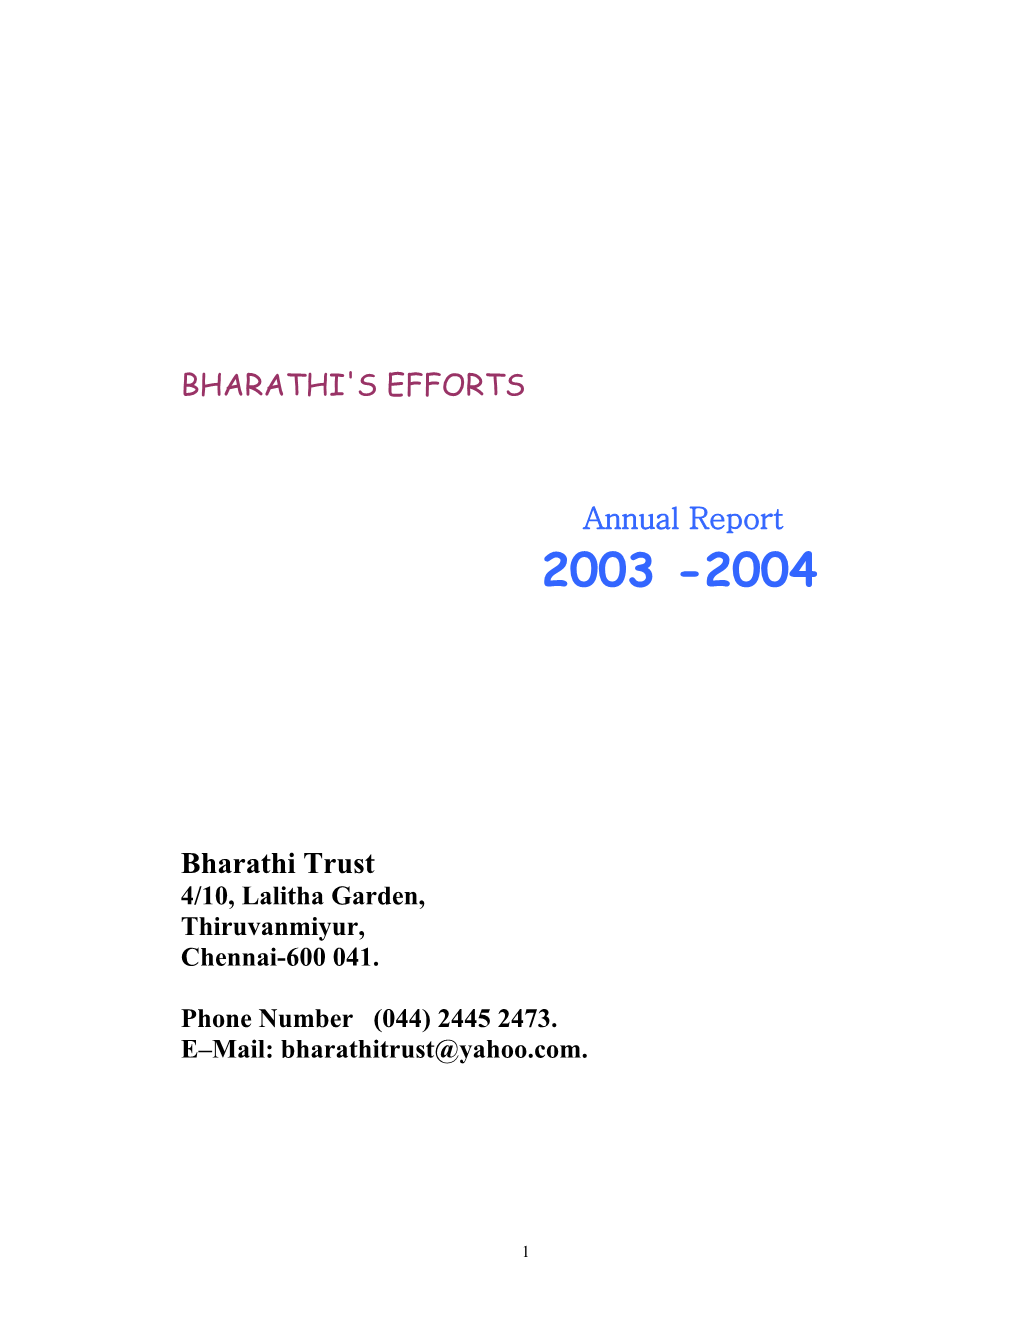 Bharathi's Efforts